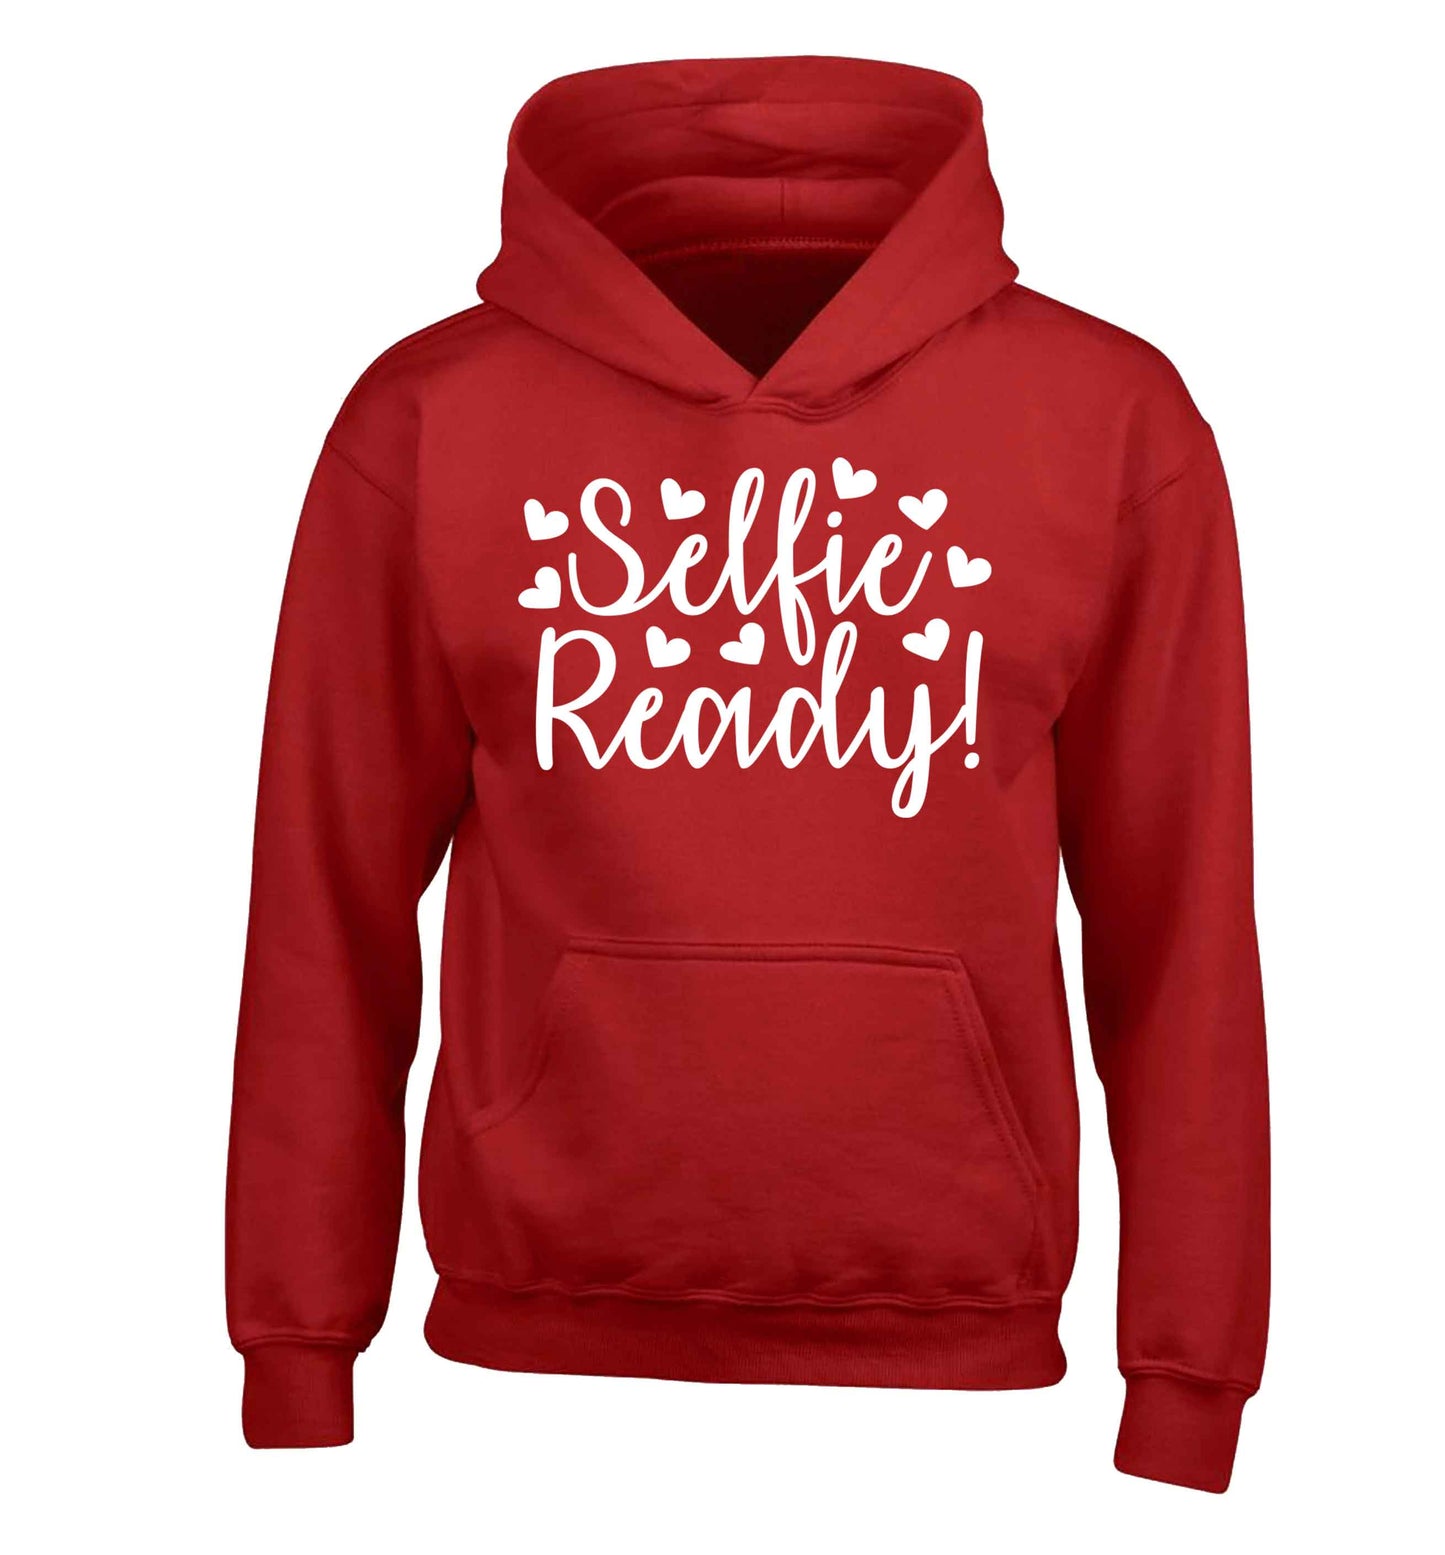 Selfie ready children's red hoodie 12-13 Years